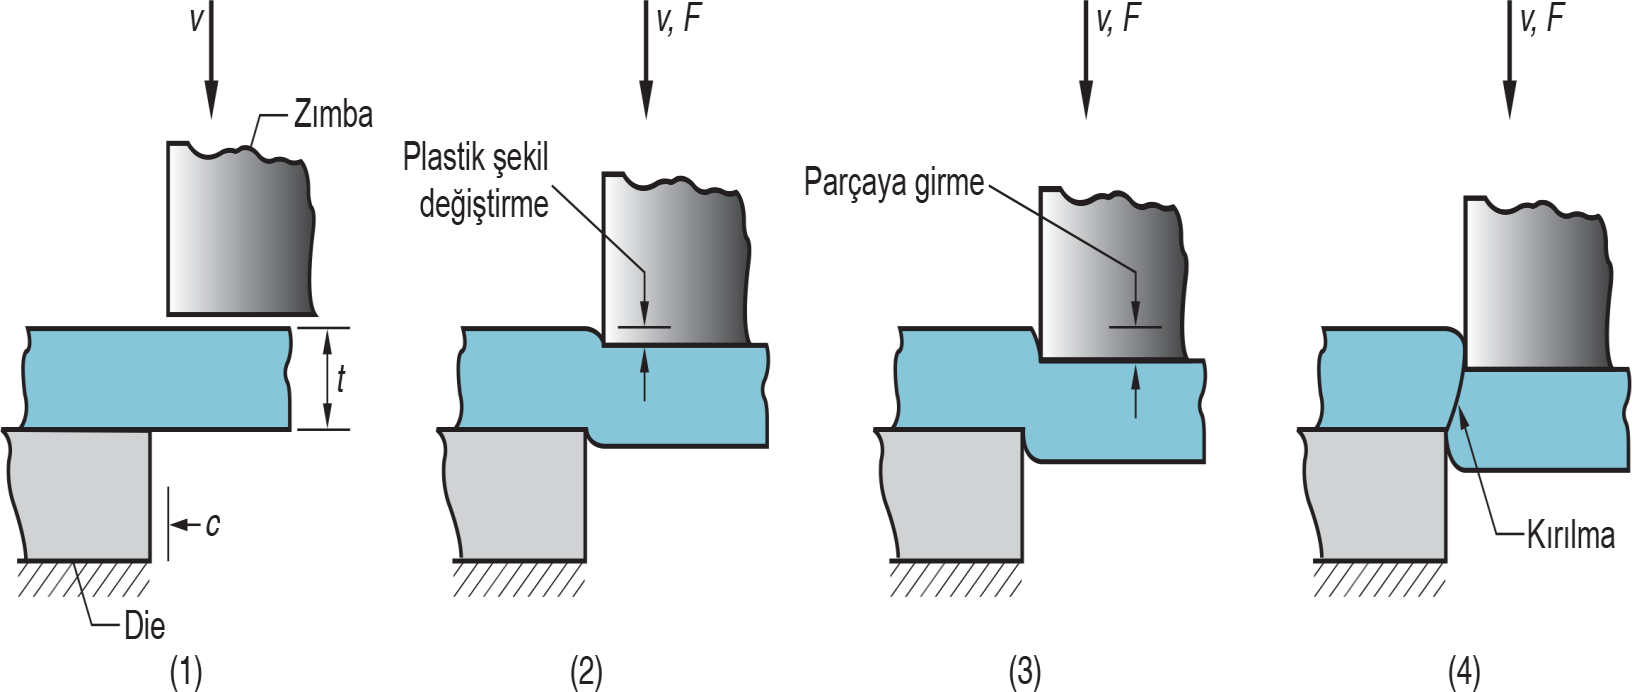 SAC METAL İŞLEMLERİ-KESME Kesme Sac metalin kesme işlemi; sacın iki keskin kenar arasında makaslanması işlemidir. Şekilde gösterildiği gibi 4 aşamada gerçekleştirilir.